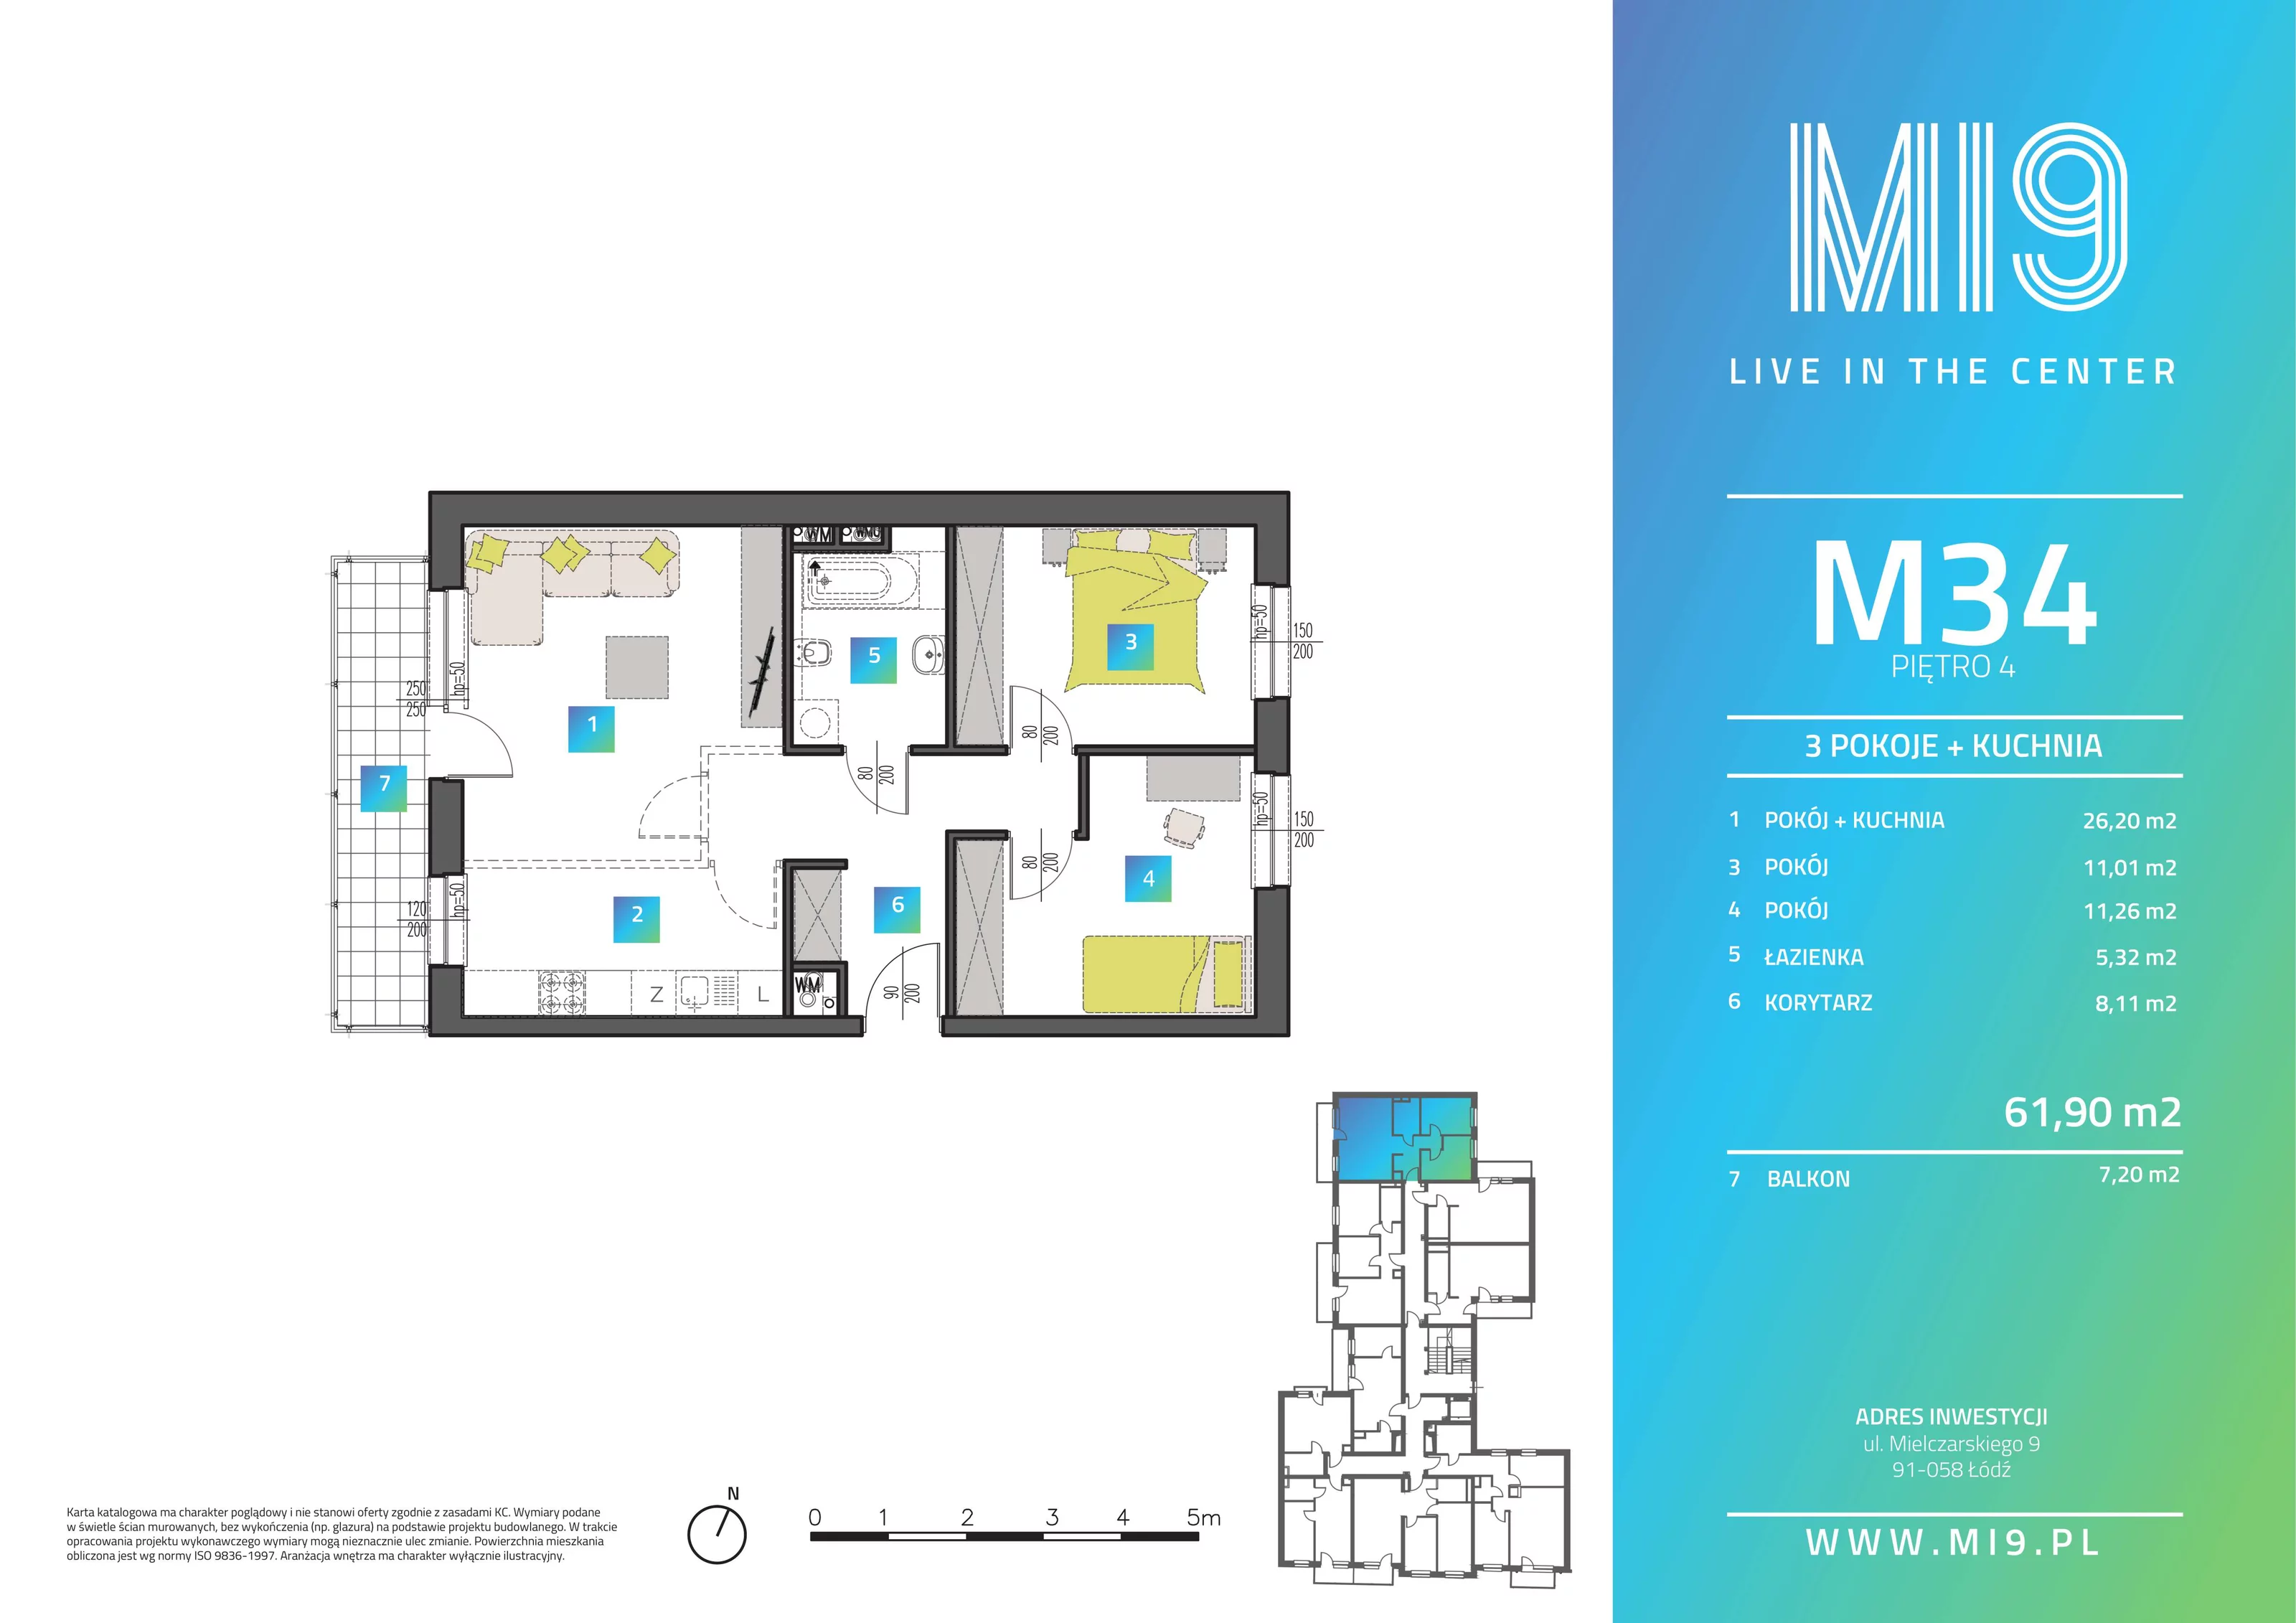 Apartament 61,90 m², piętro 4, oferta nr M34, Mi9, Łódź, Polesie, Stare Polesie, ul. Romualda Mielczarskiego 9